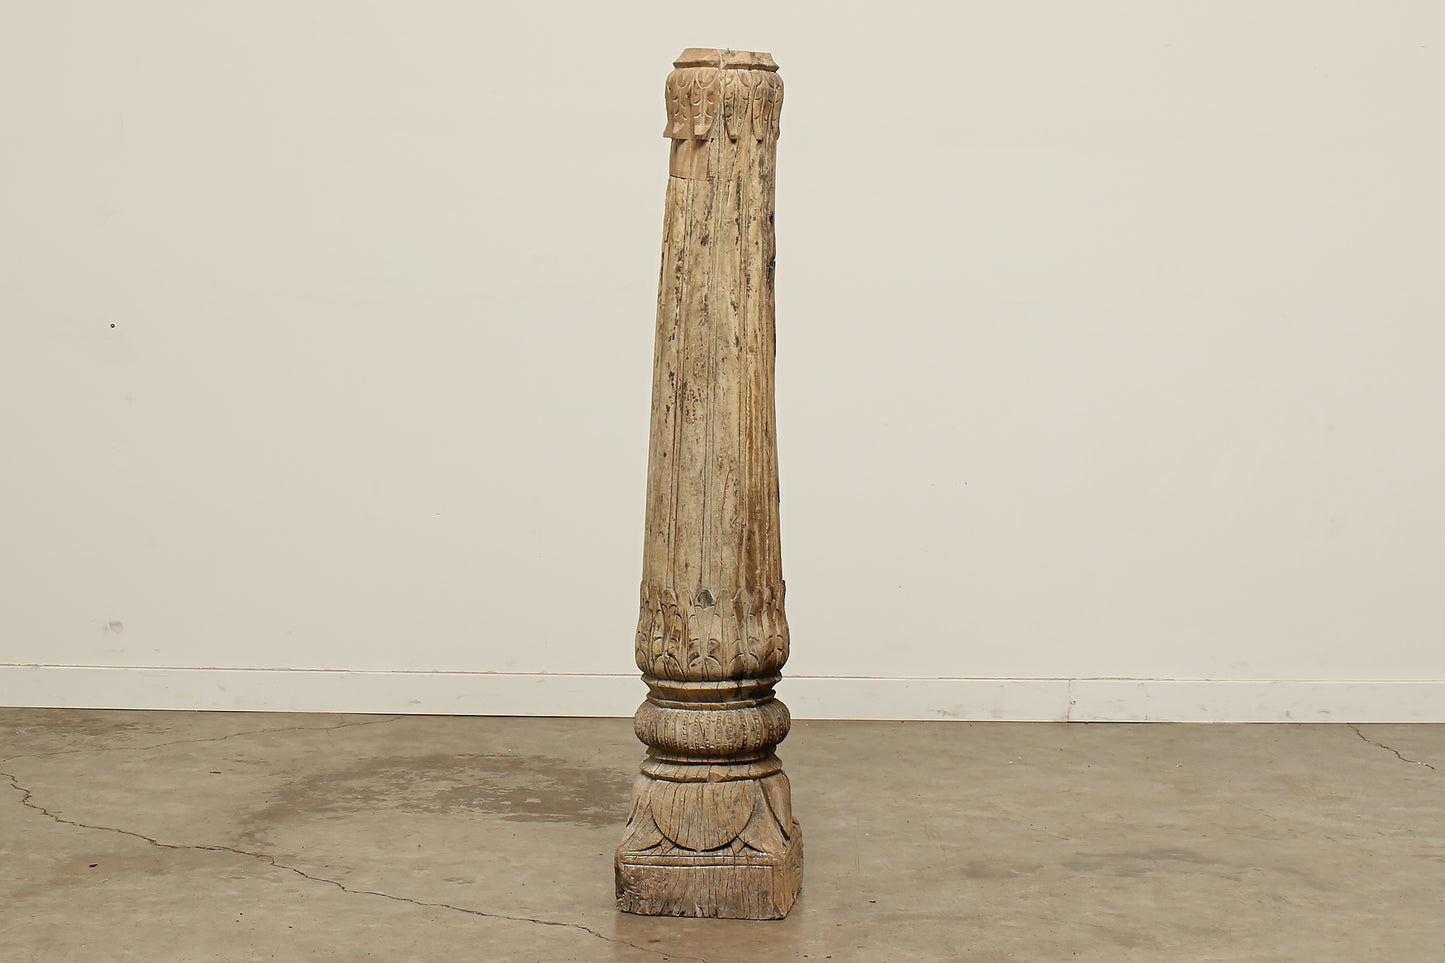 Antique Pillar